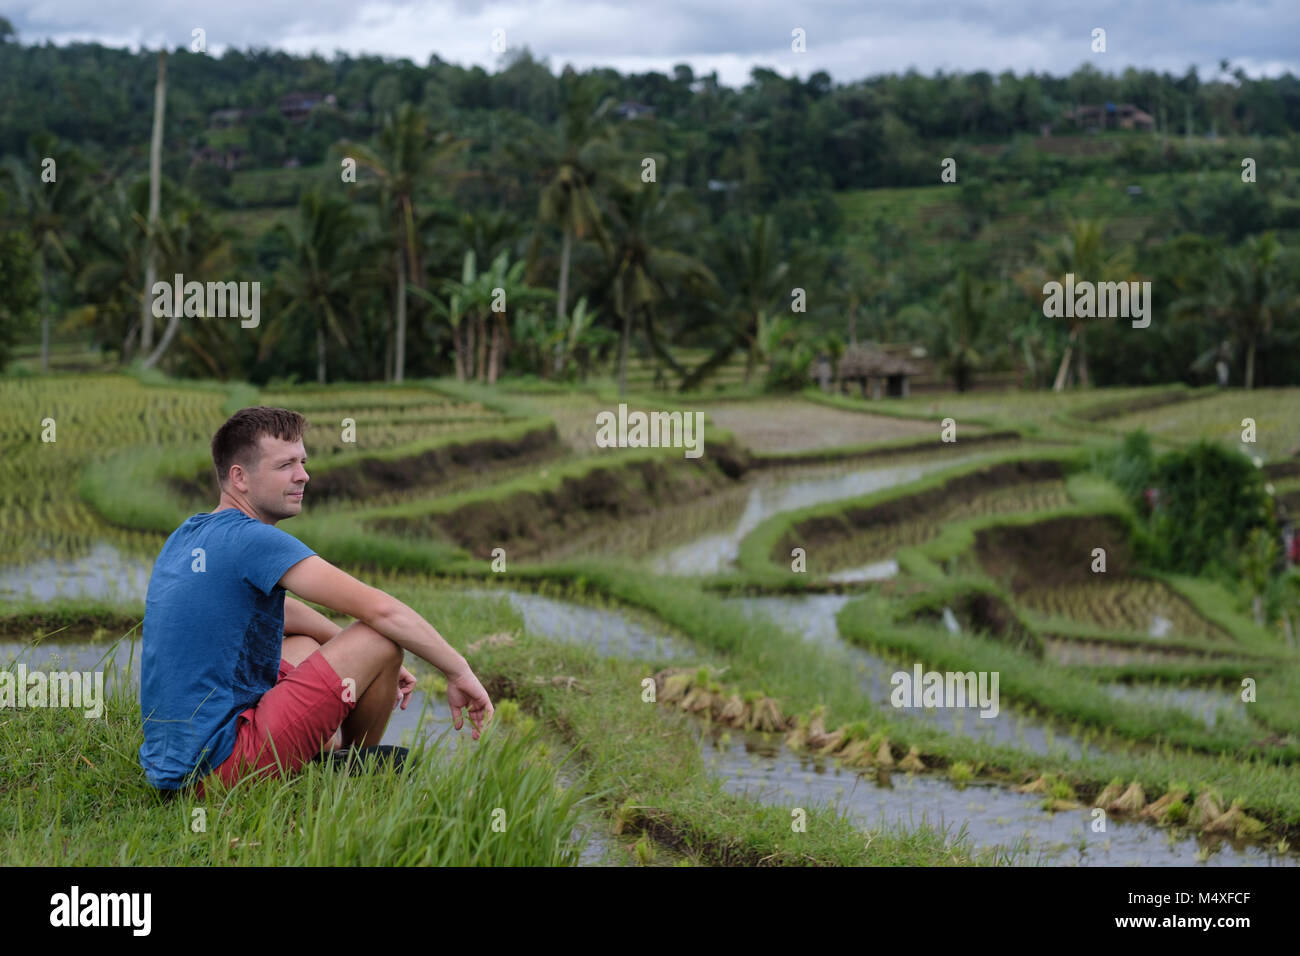 Junger Mann Reisender Sitzen und Entspannen im Freien am Reis Felder auf Bali Indonesien angebaut. Stockfoto